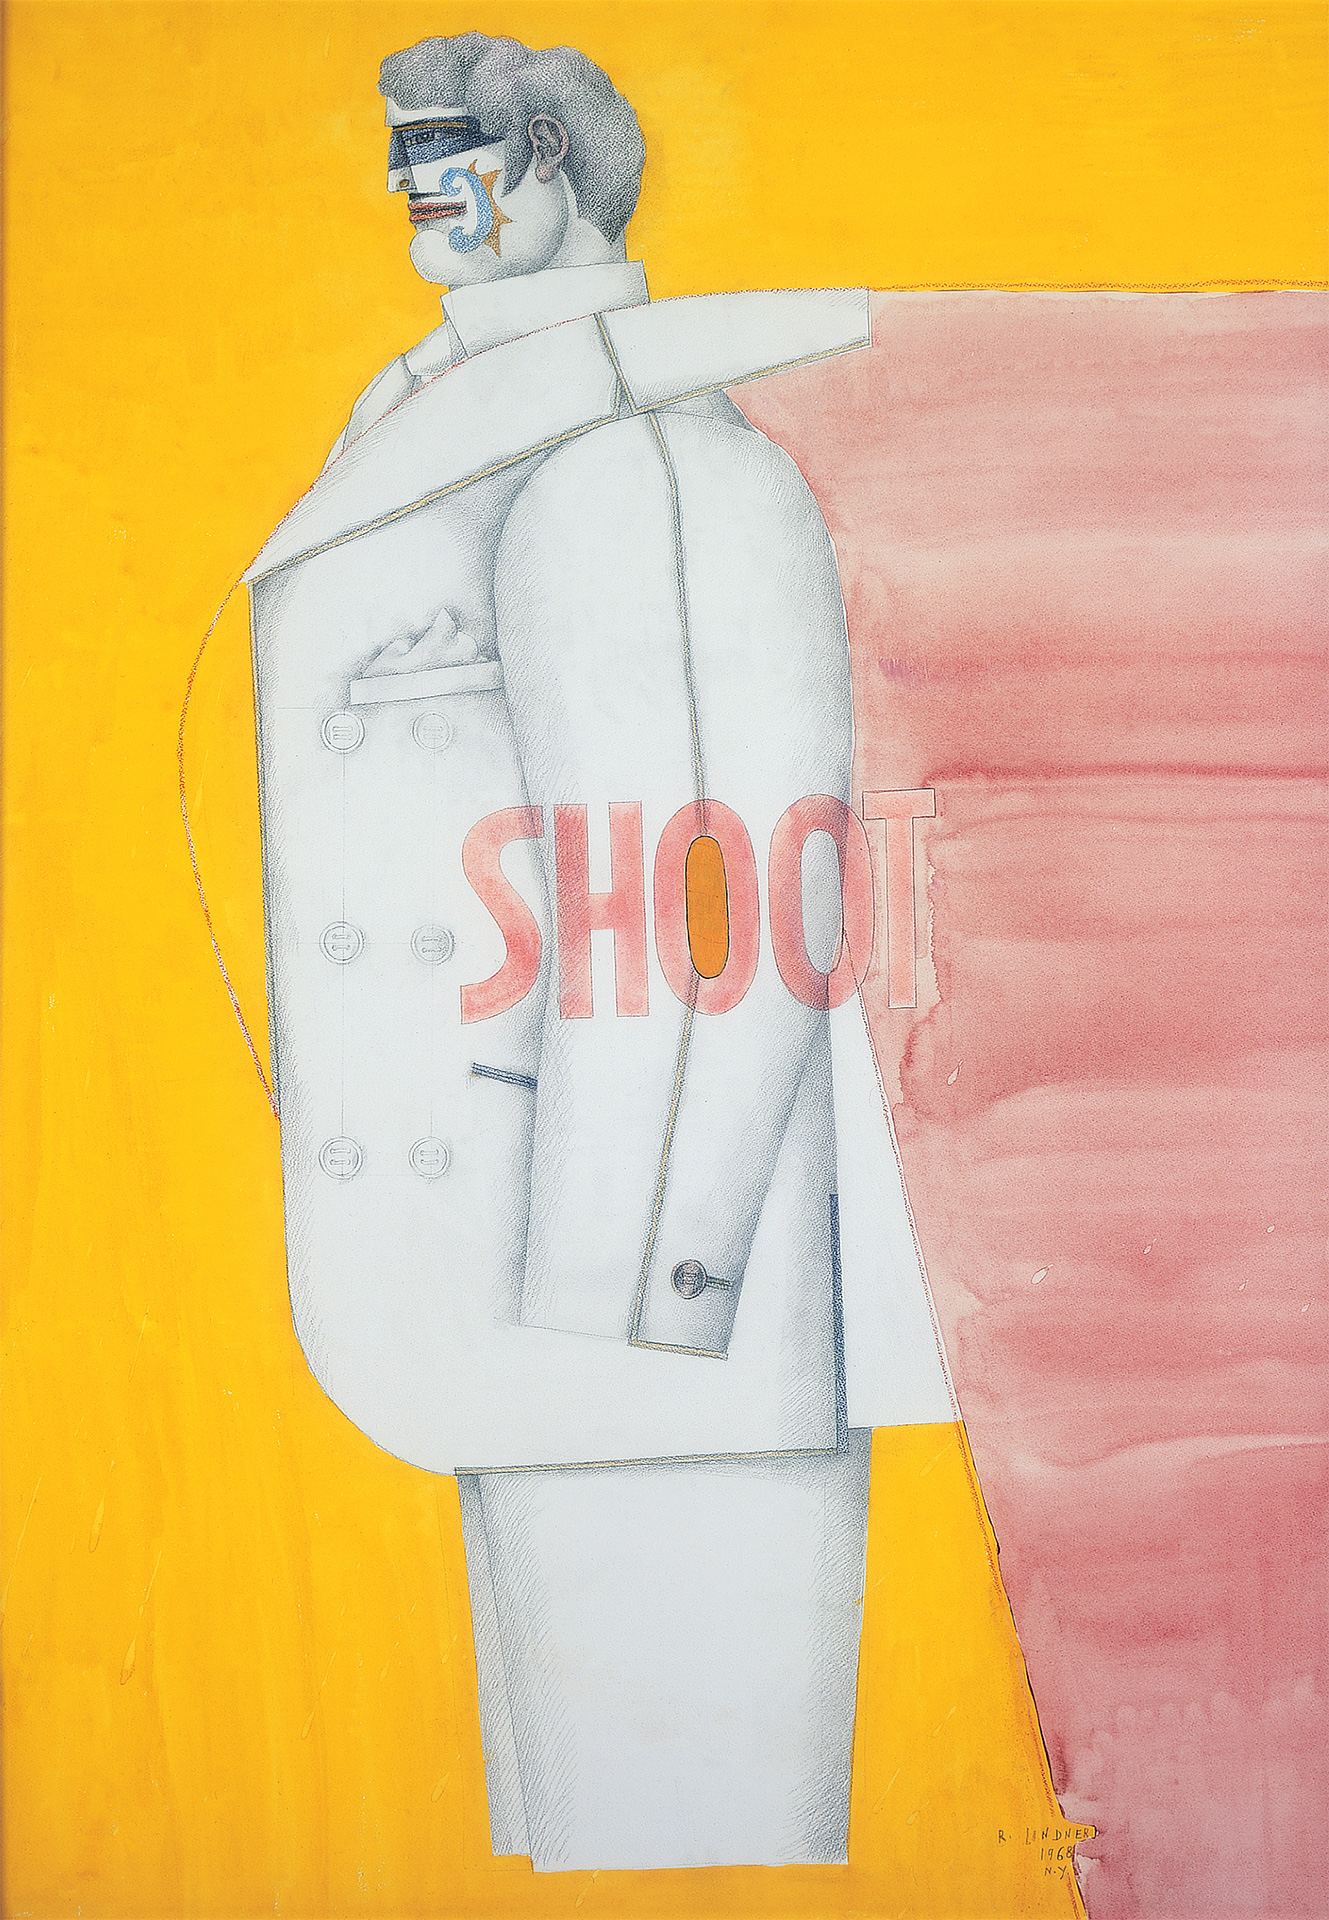 Shoot III, 1968-69